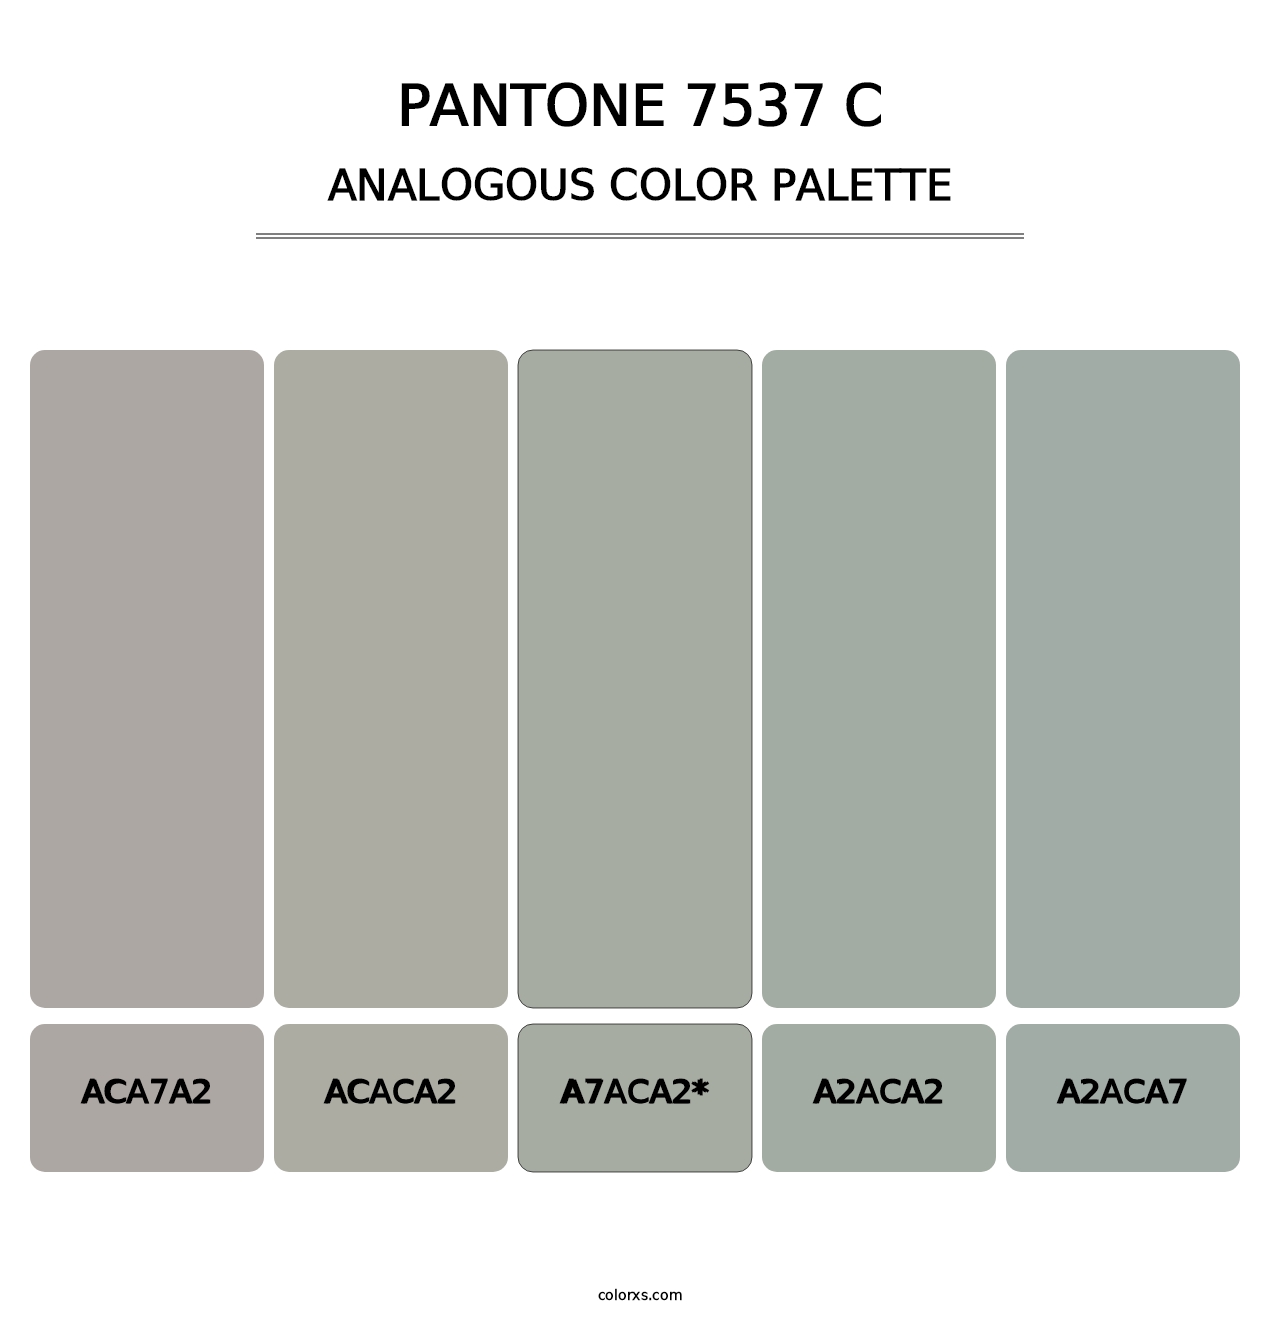 PANTONE 7537 C - Analogous Color Palette